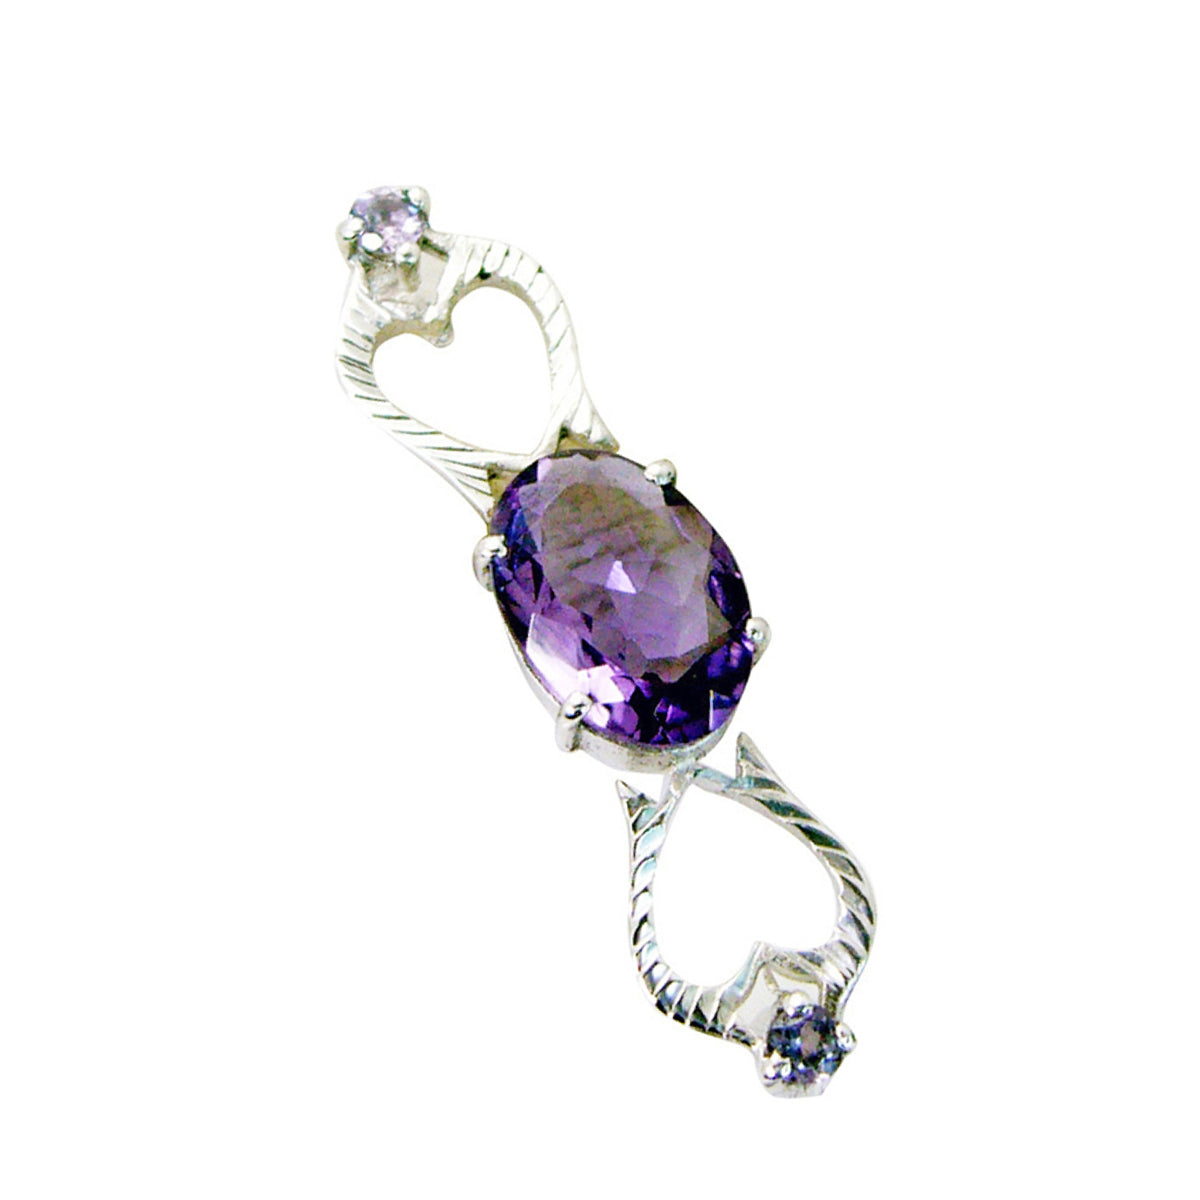 riyo милый драгоценный камень овальный граненый фиолетовый аметист серебряный кулон 1064 пробы подарок для подруги